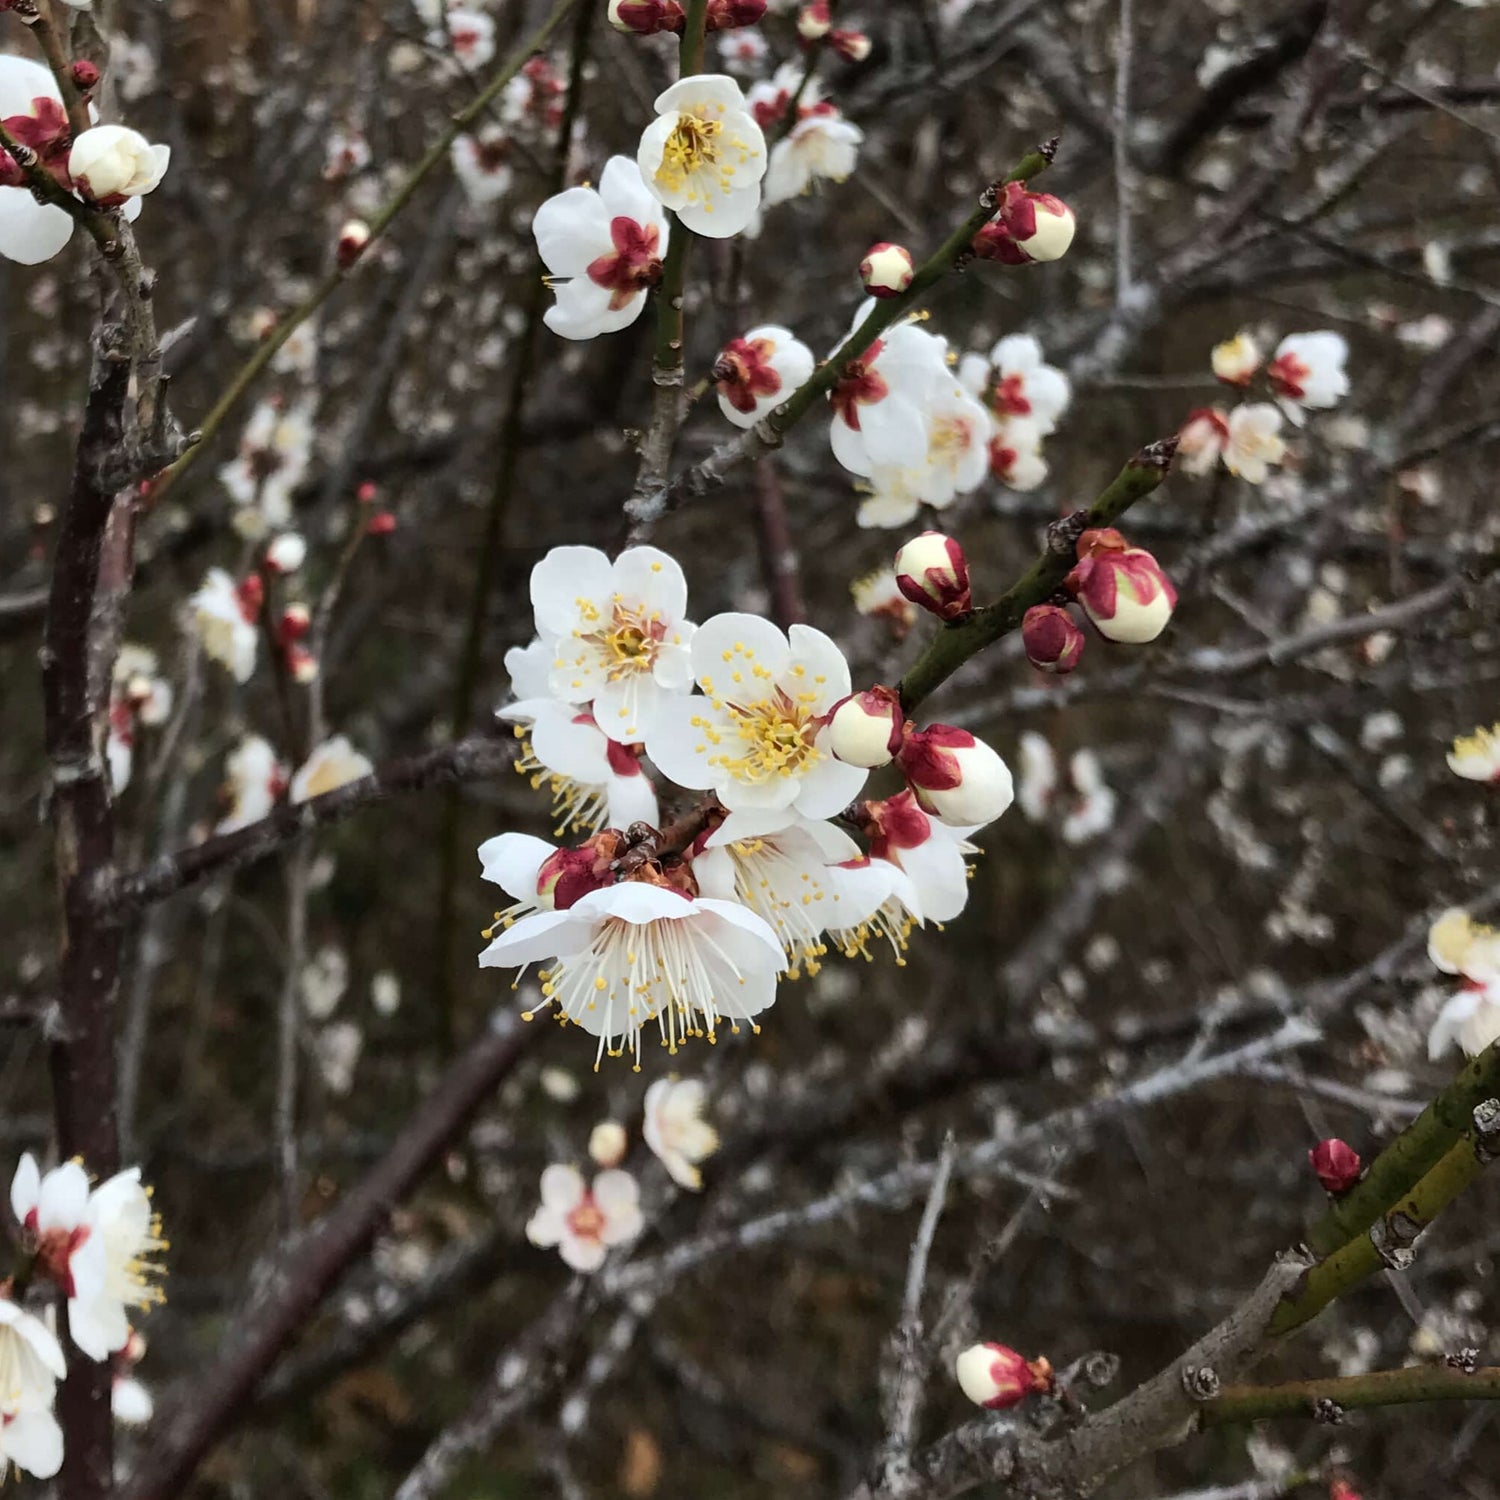 Plum blossoms - Ume